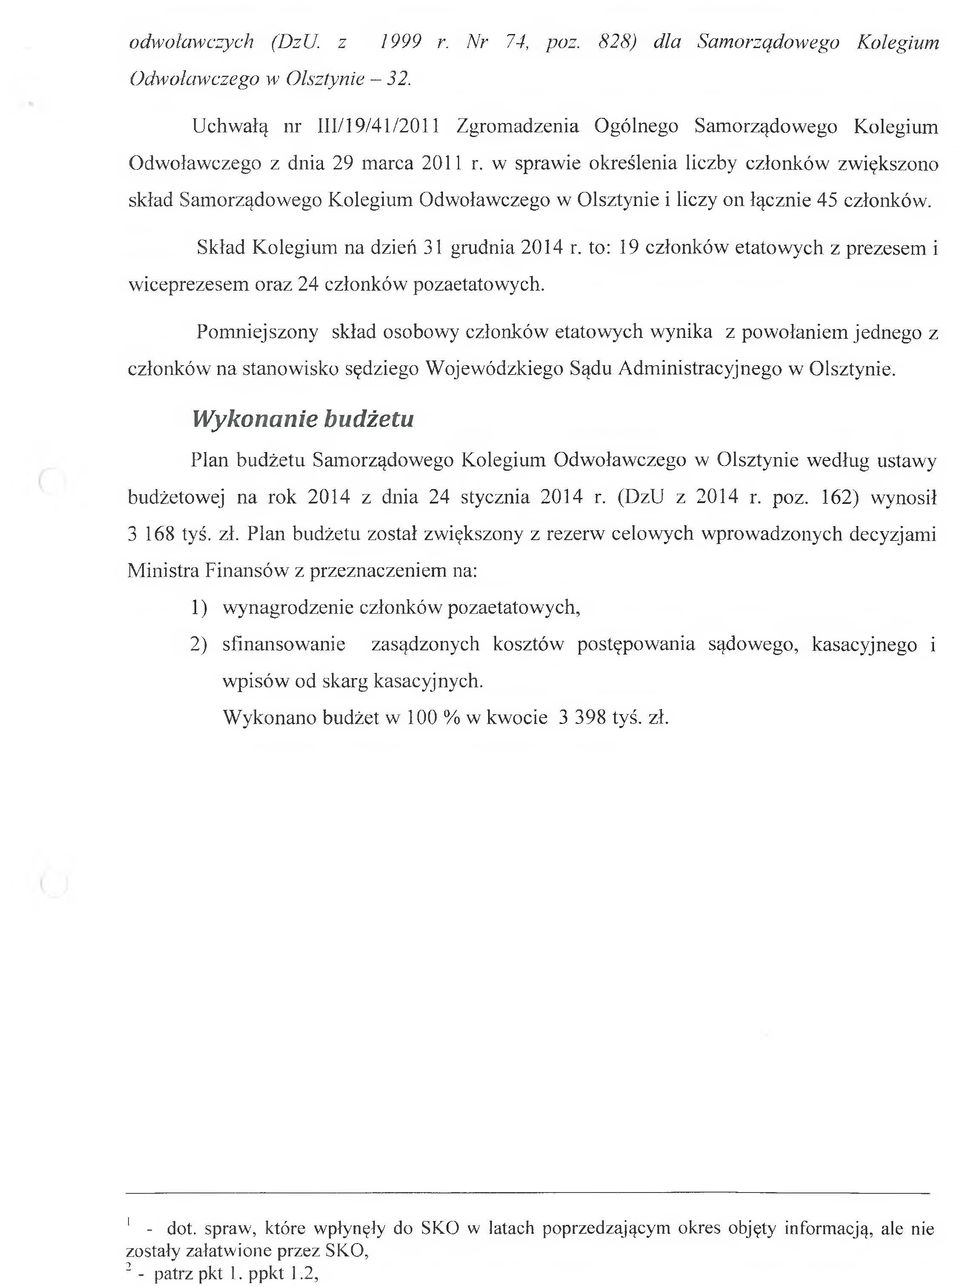 w sprawie określenia liczby członków zwiększono skład Samorządowego Kolegium Odwoławczego w Olsztynie i liczy on łącznie 45 członków. Skład Kolegium na dzień 31 grudnia 2014 r.